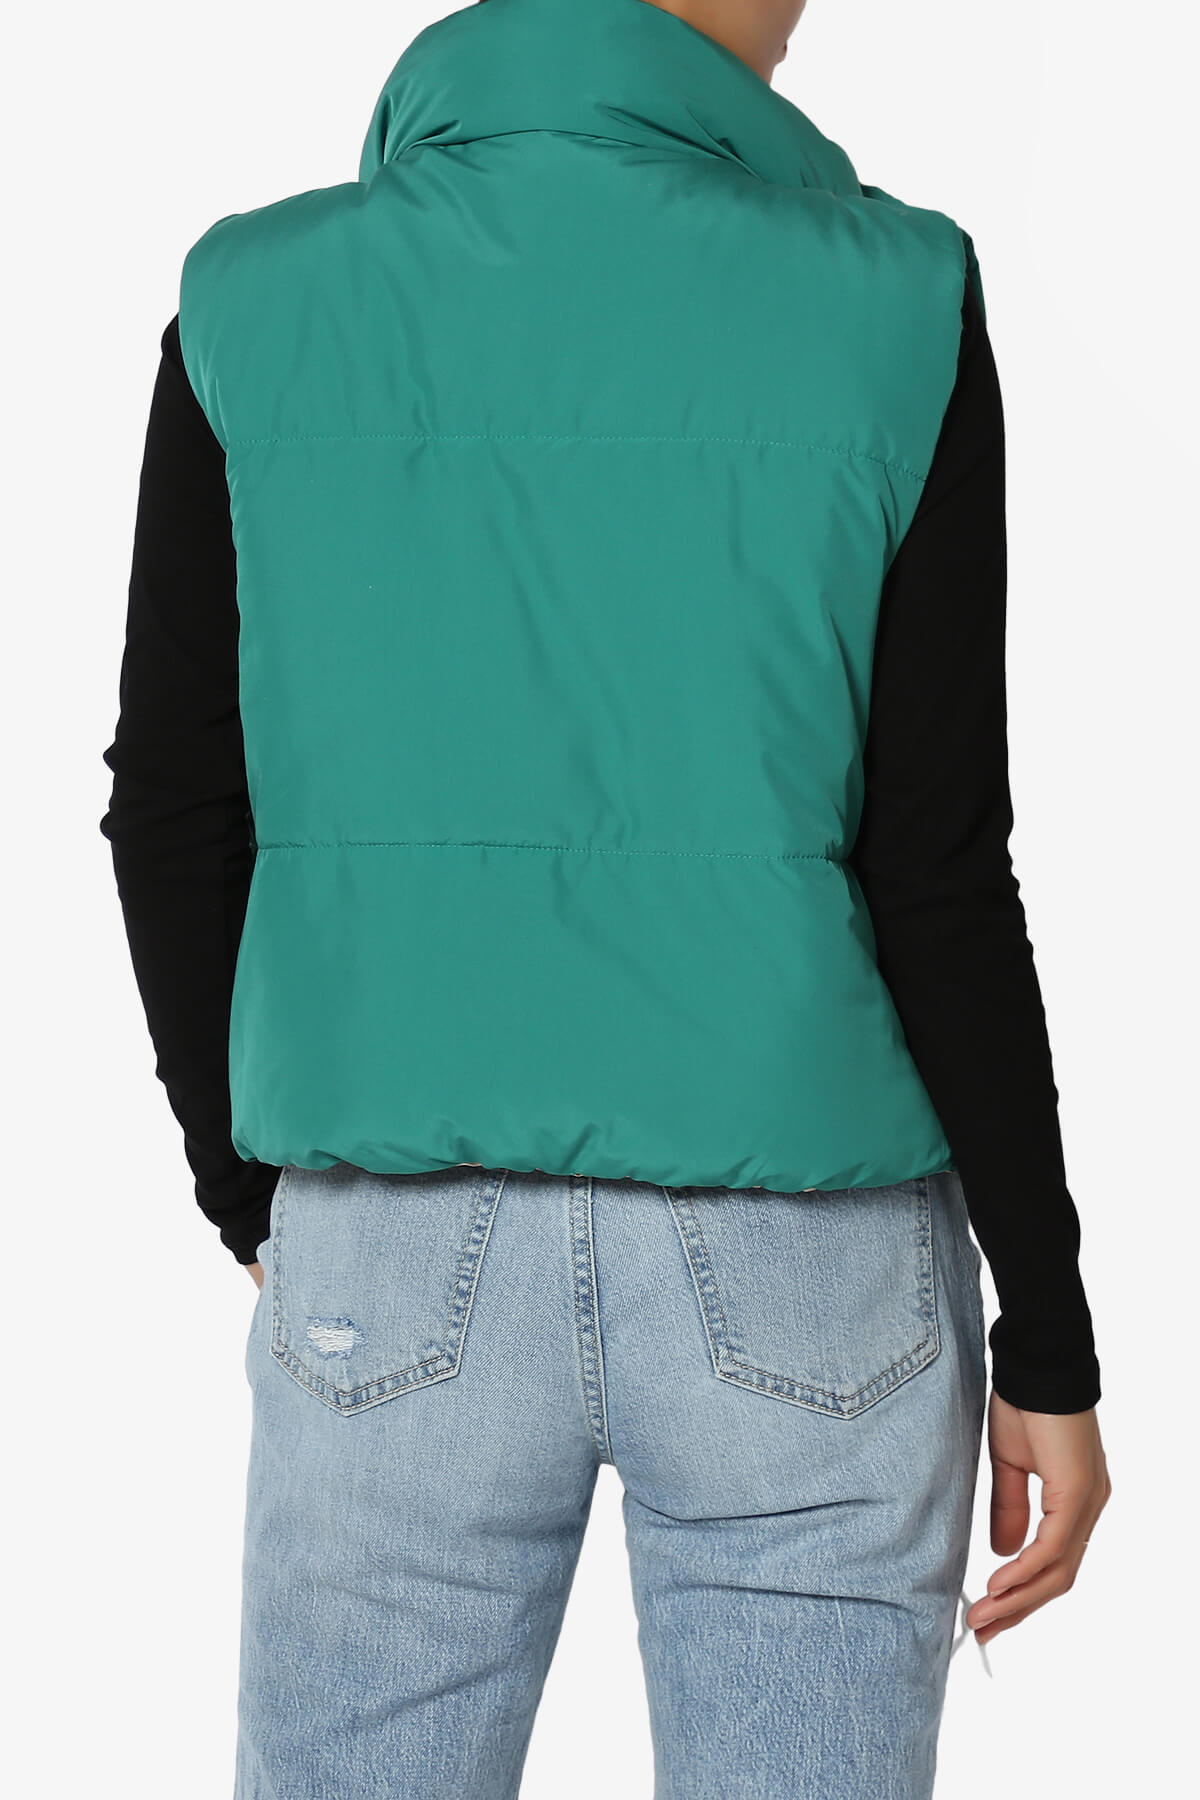 Legaci Reversible Puffer Vest GREEN AND TAN_2